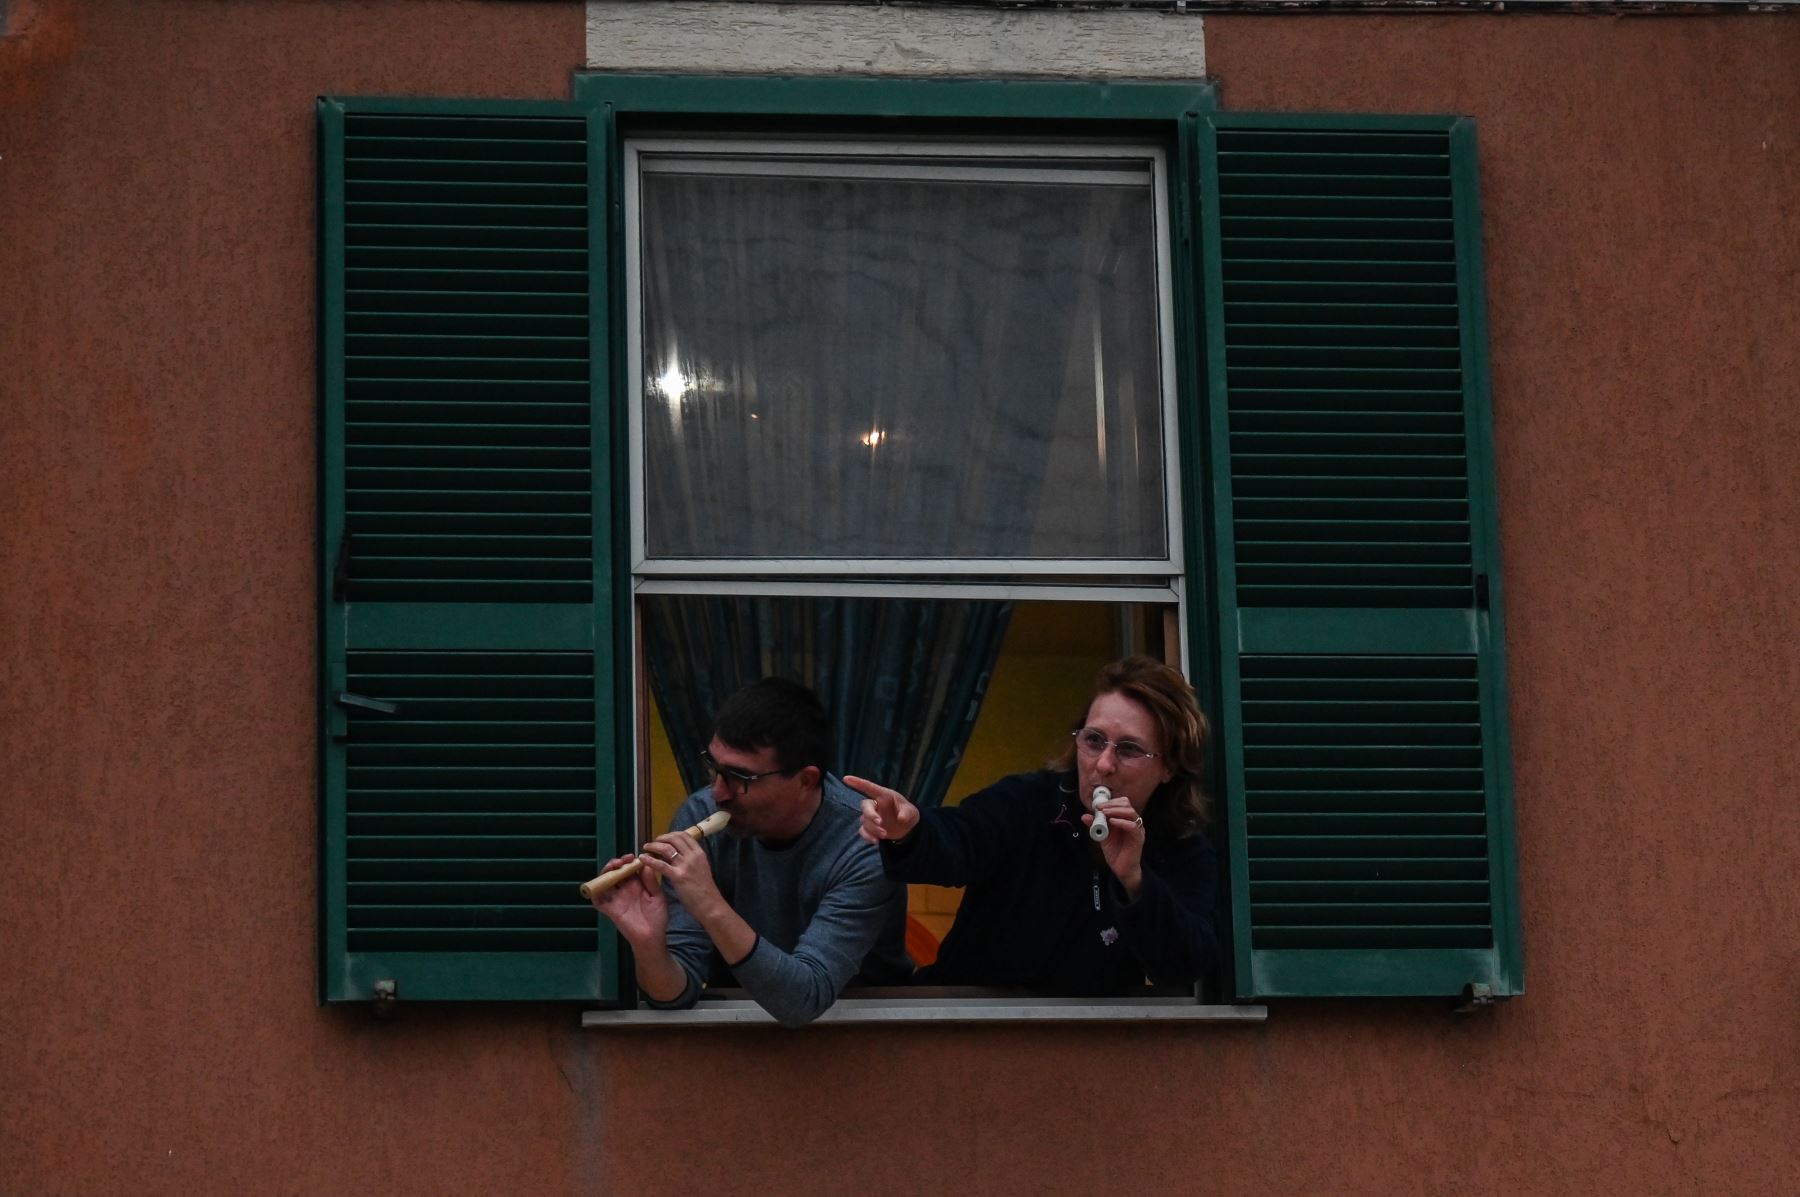 La gente toca el himno nacional italiano con instrumentos musicales desde la ventana de su casa durante un flash mob llamado "¡Mira desde la ventana, Roma mía!" Destinado a animar el silencio de la ciudad durante el nuevo encierro de coronavirus, en Roma.
Foto: AFP